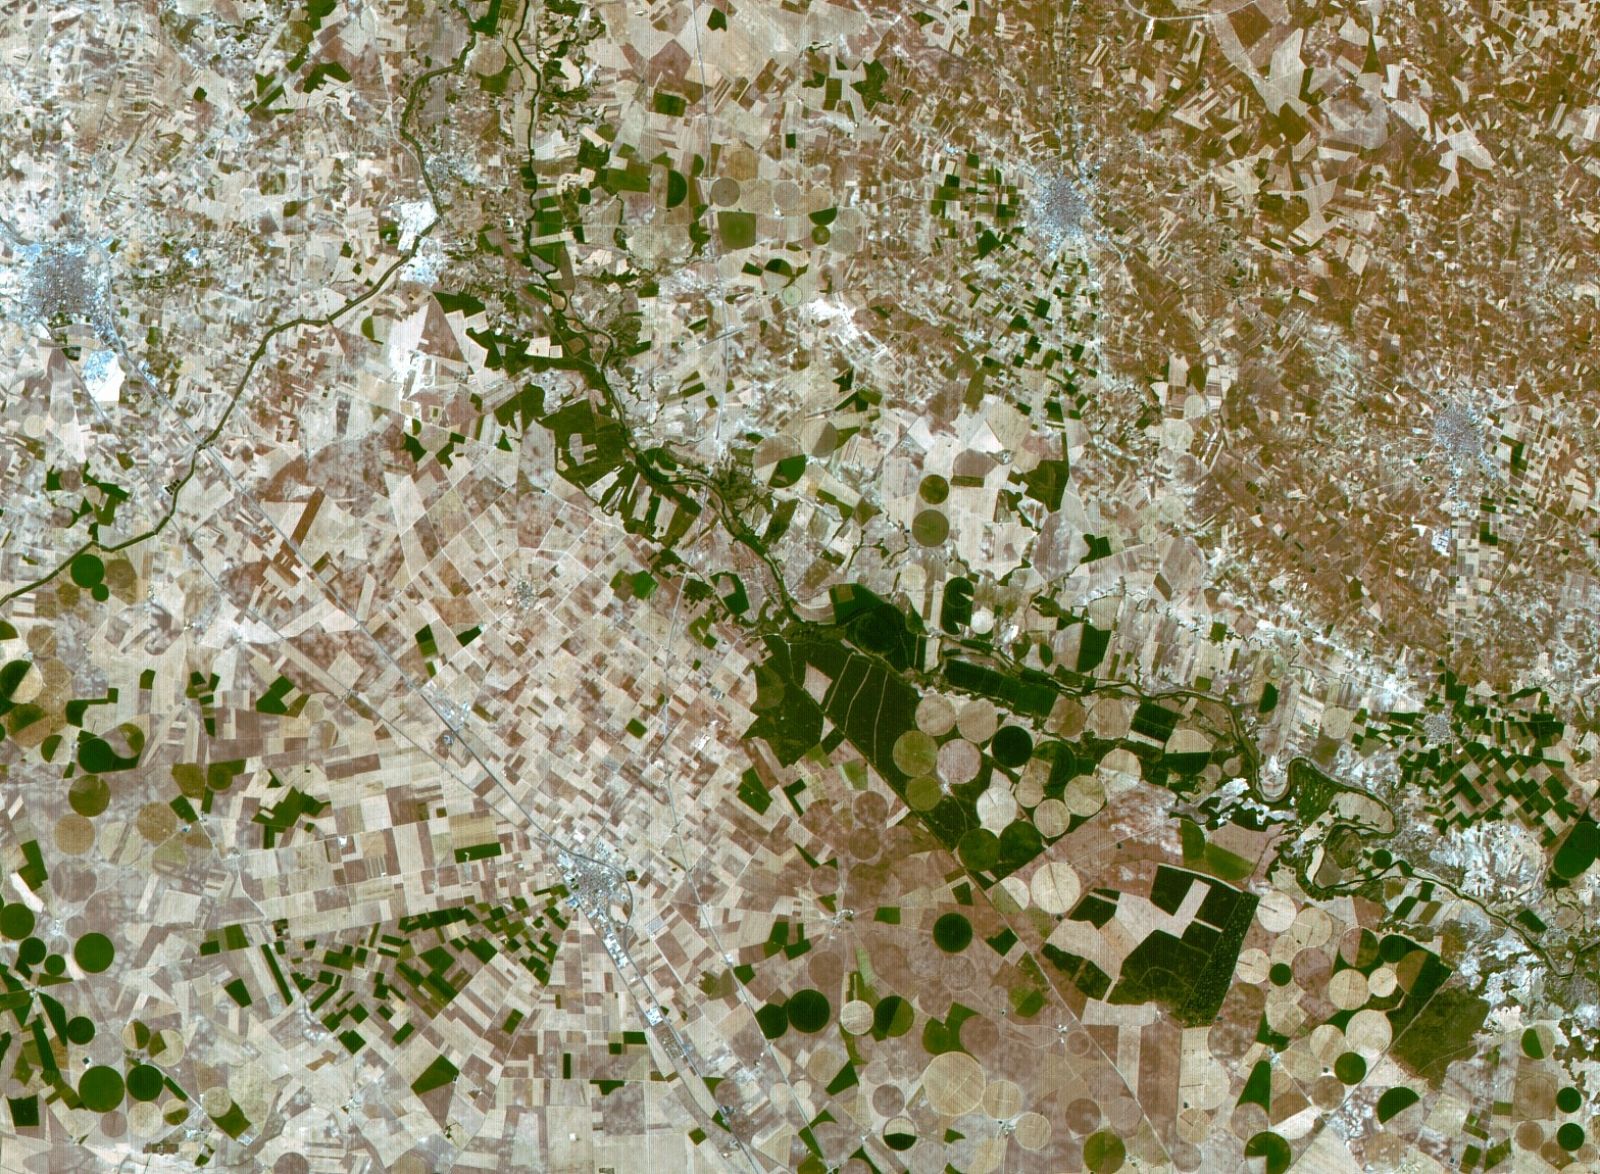 En la imagen aparecen los campos de Castilla-La Mancha y se aprecian plantaciones agrícolas, la localidad albaceteña de La Roda y el río Júcar.